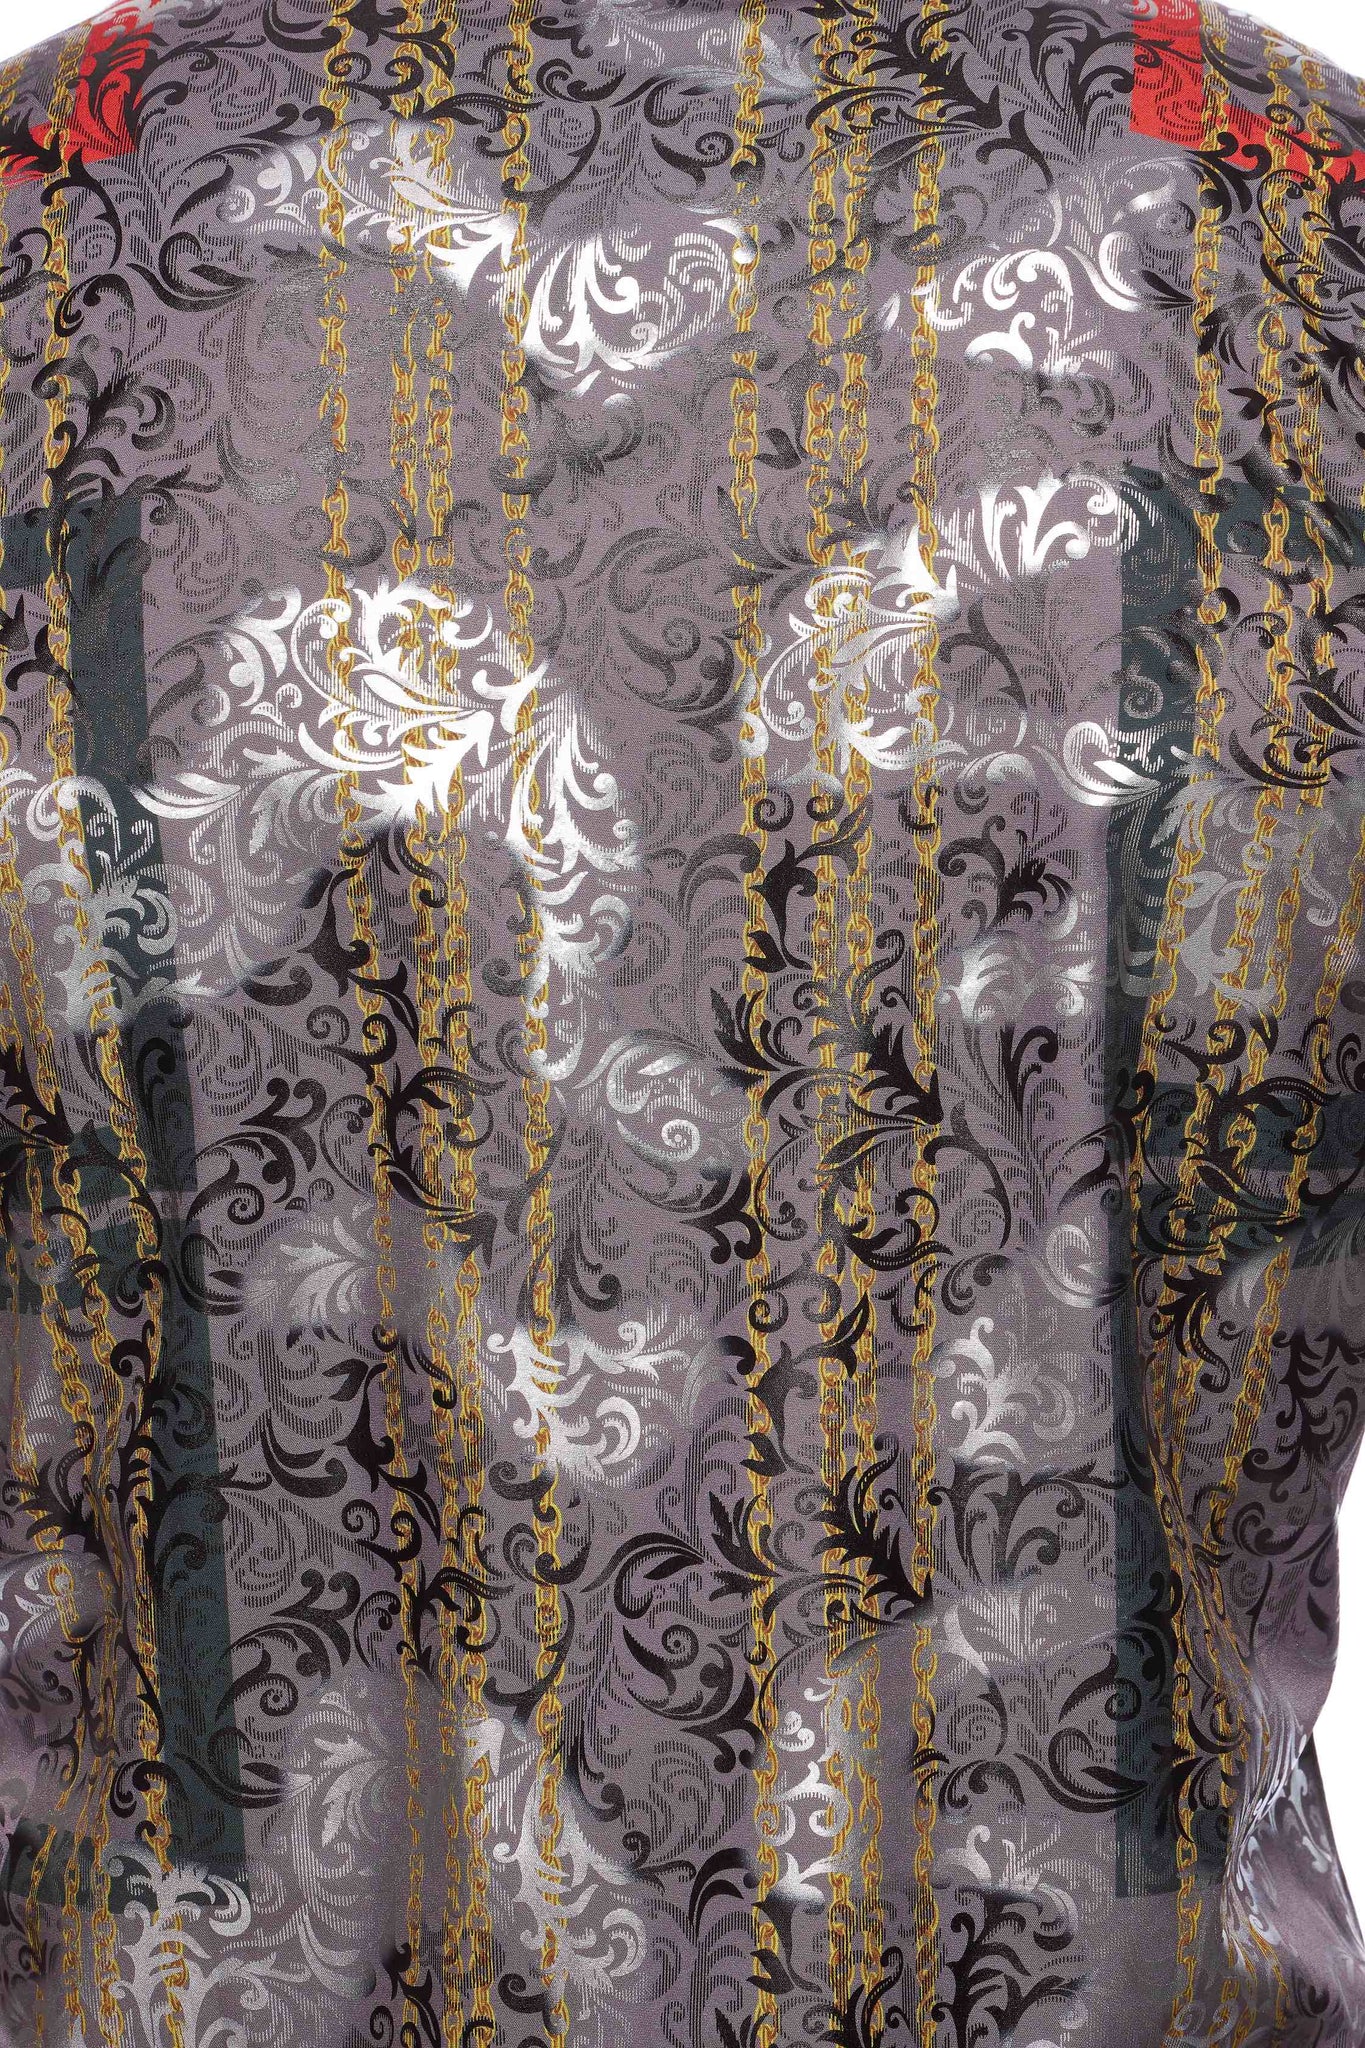 Mens Luxury Brand Printed Silk Like Shirts-HLS2002L-522